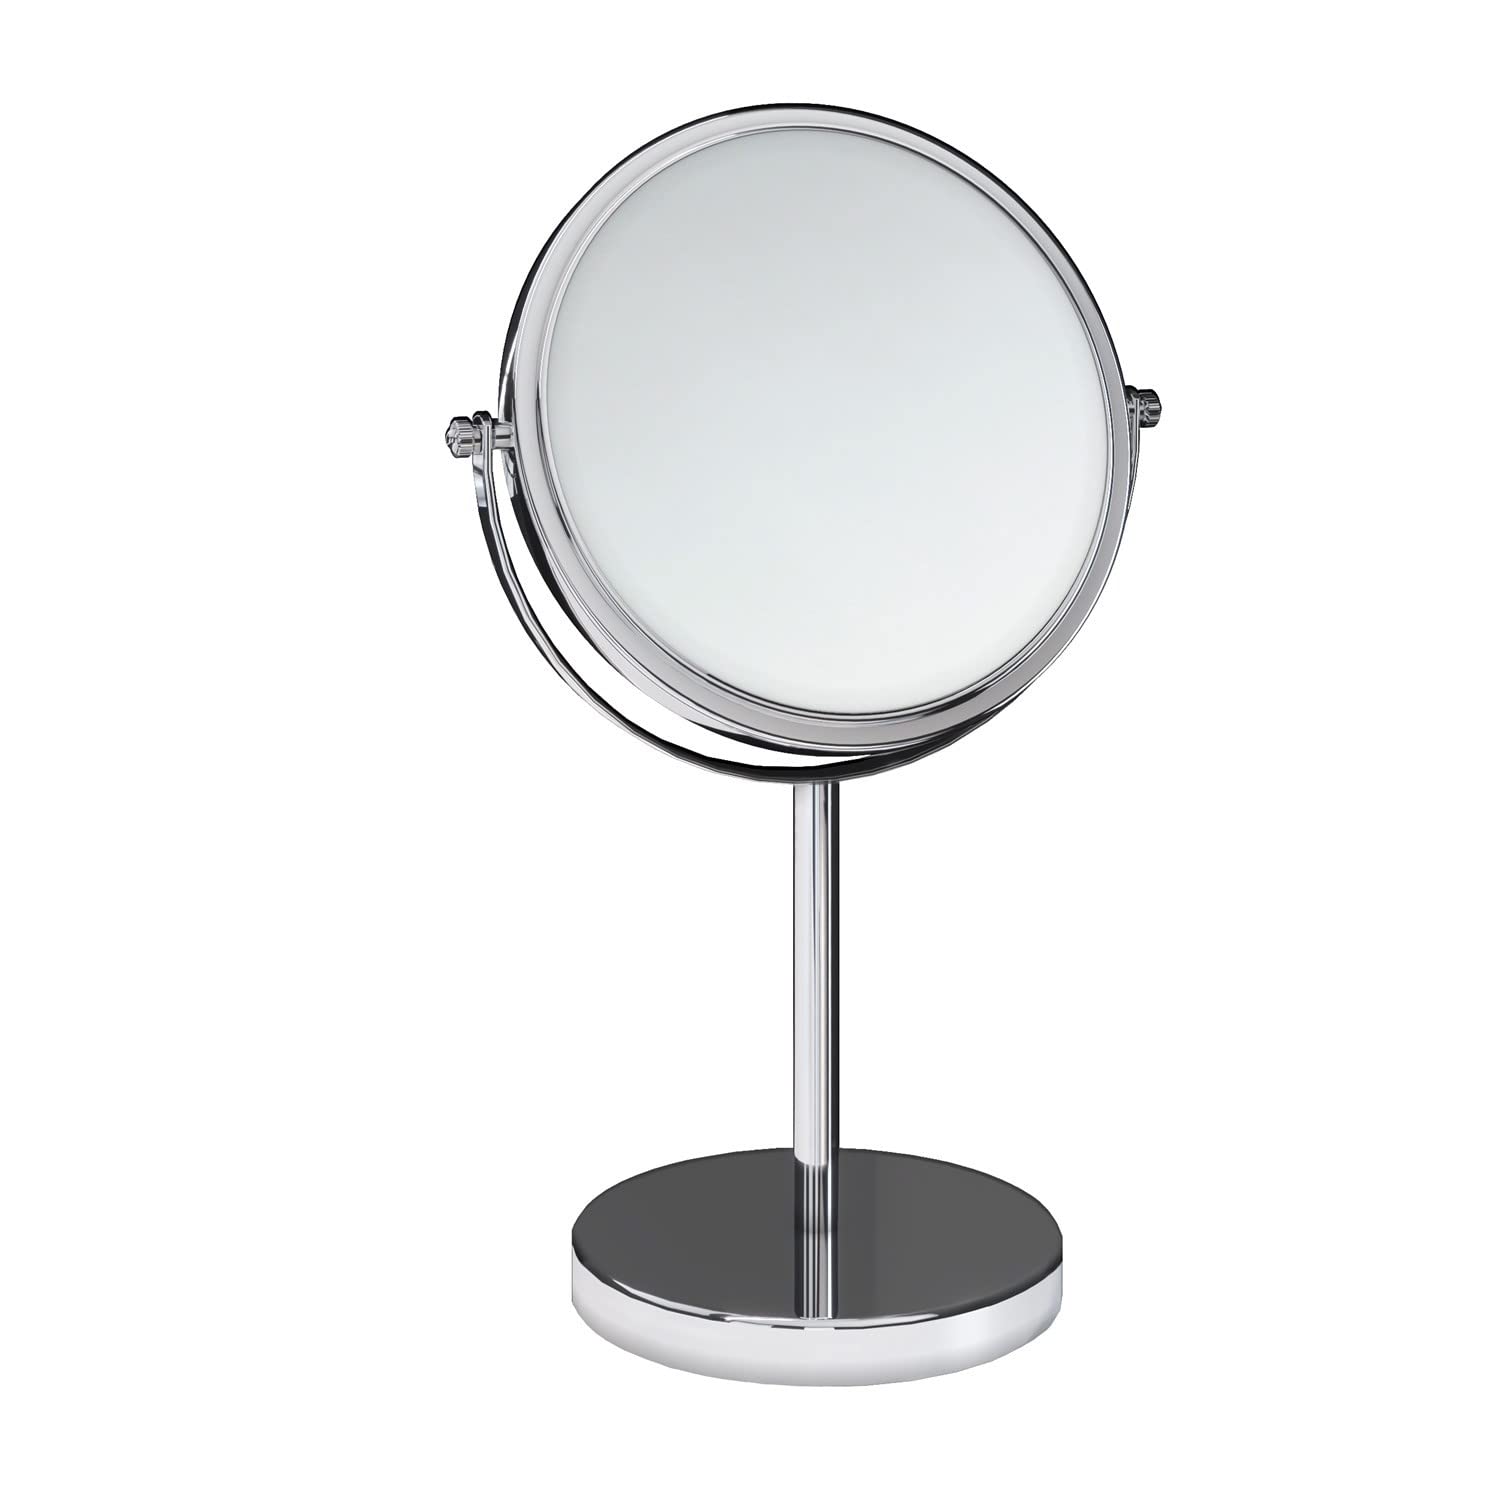 COSMIC Badezimmerspiegel | Chrom-Finish – ideal für Badezimmer, Waschbecken und WC | Maße 20,2 x 36,8 x 12,5 cm